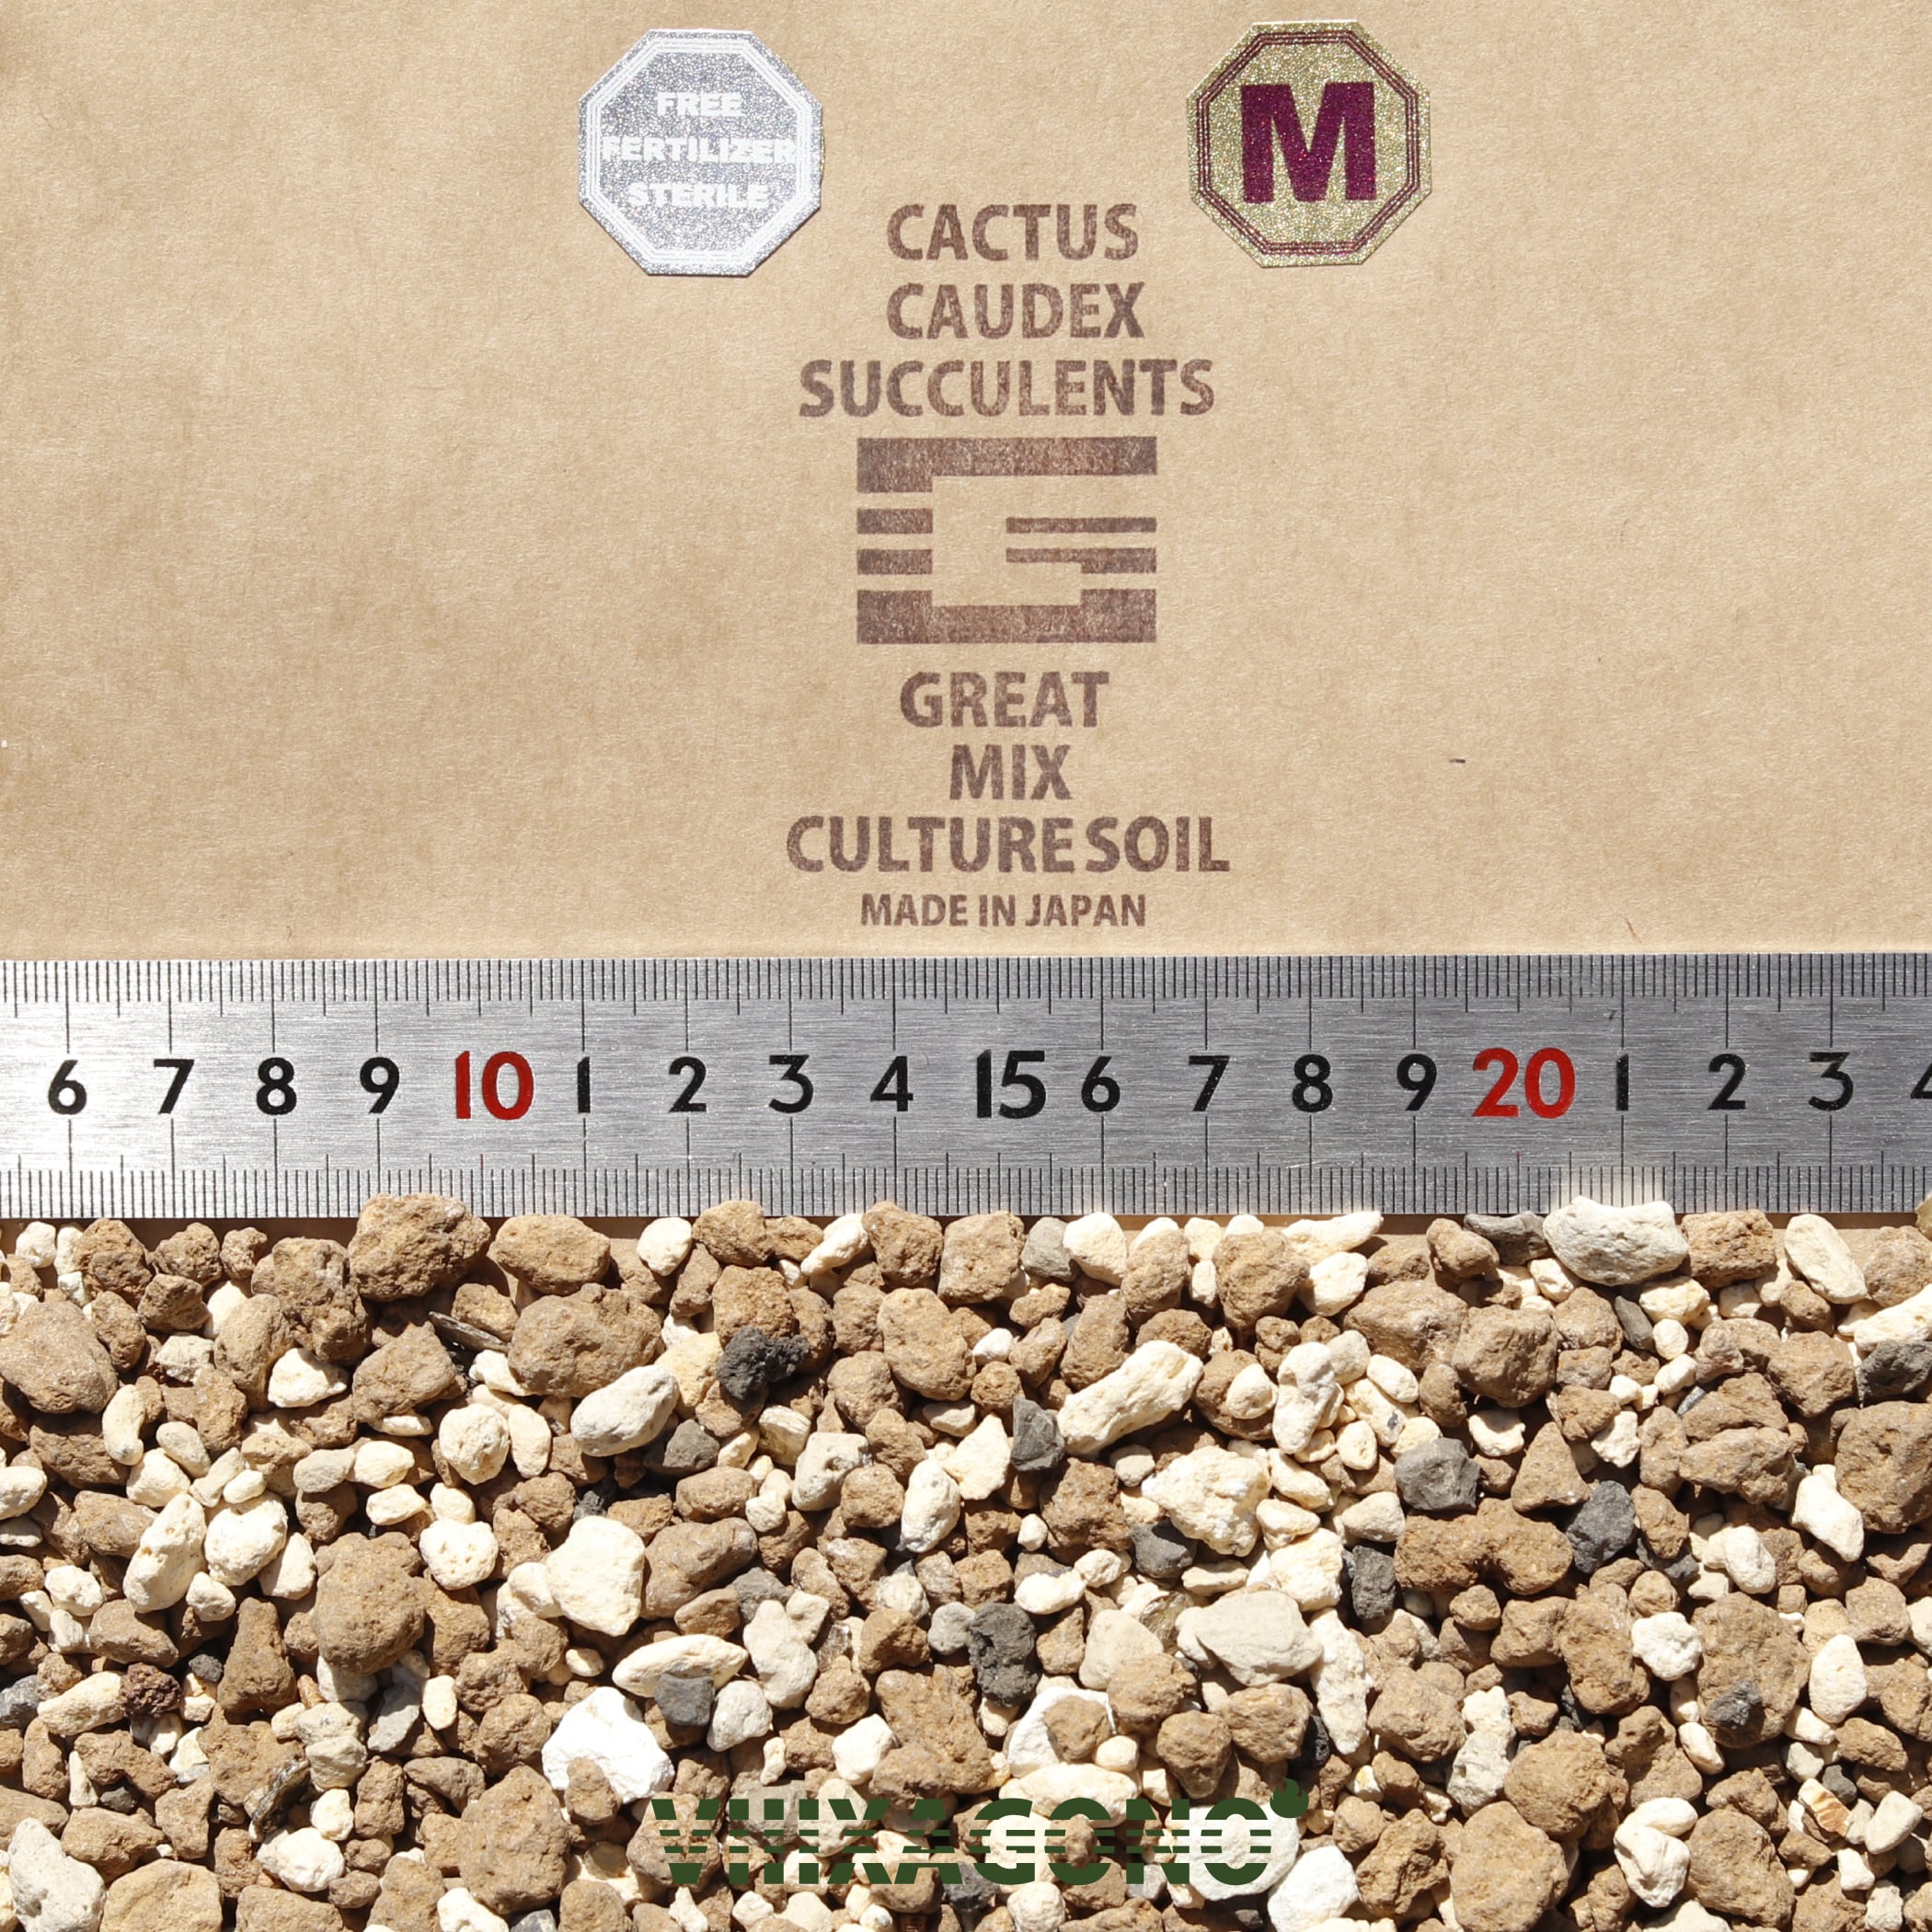 【送無】GREAT MIX CULTURE SOIL【S】20L 1mm-6mm